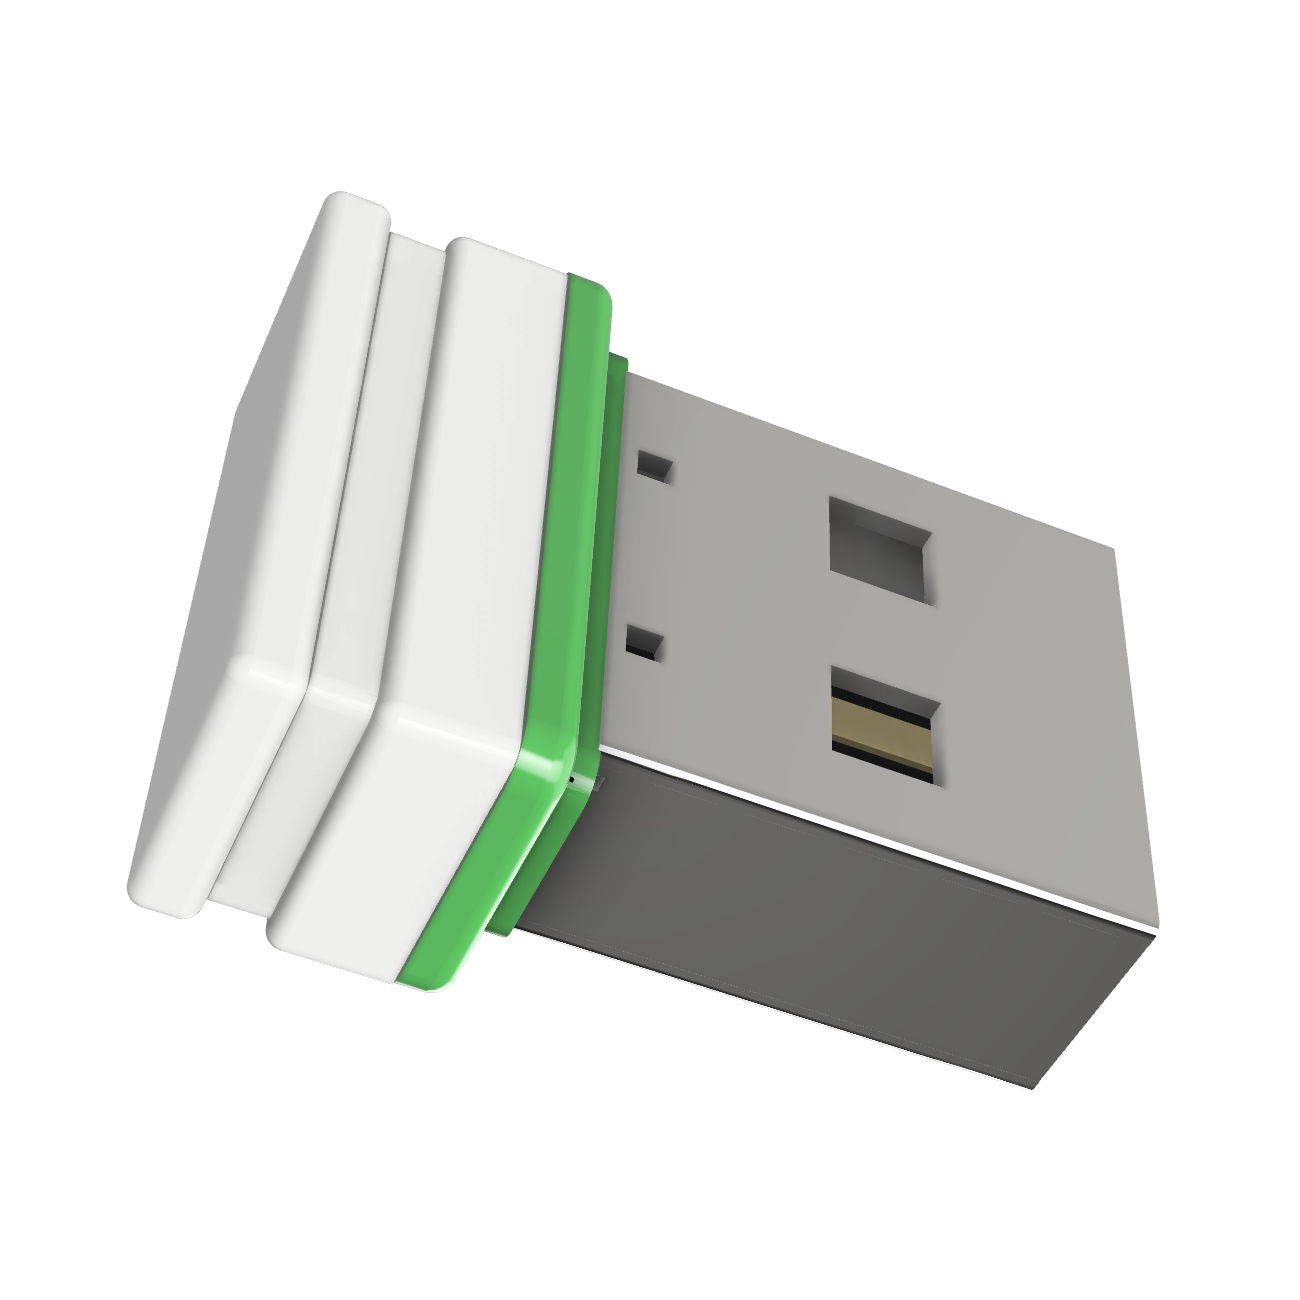 (Weiss/Grün, GERMANY ®ULTRA 2 P1 GB) Mini USB USB-Stick